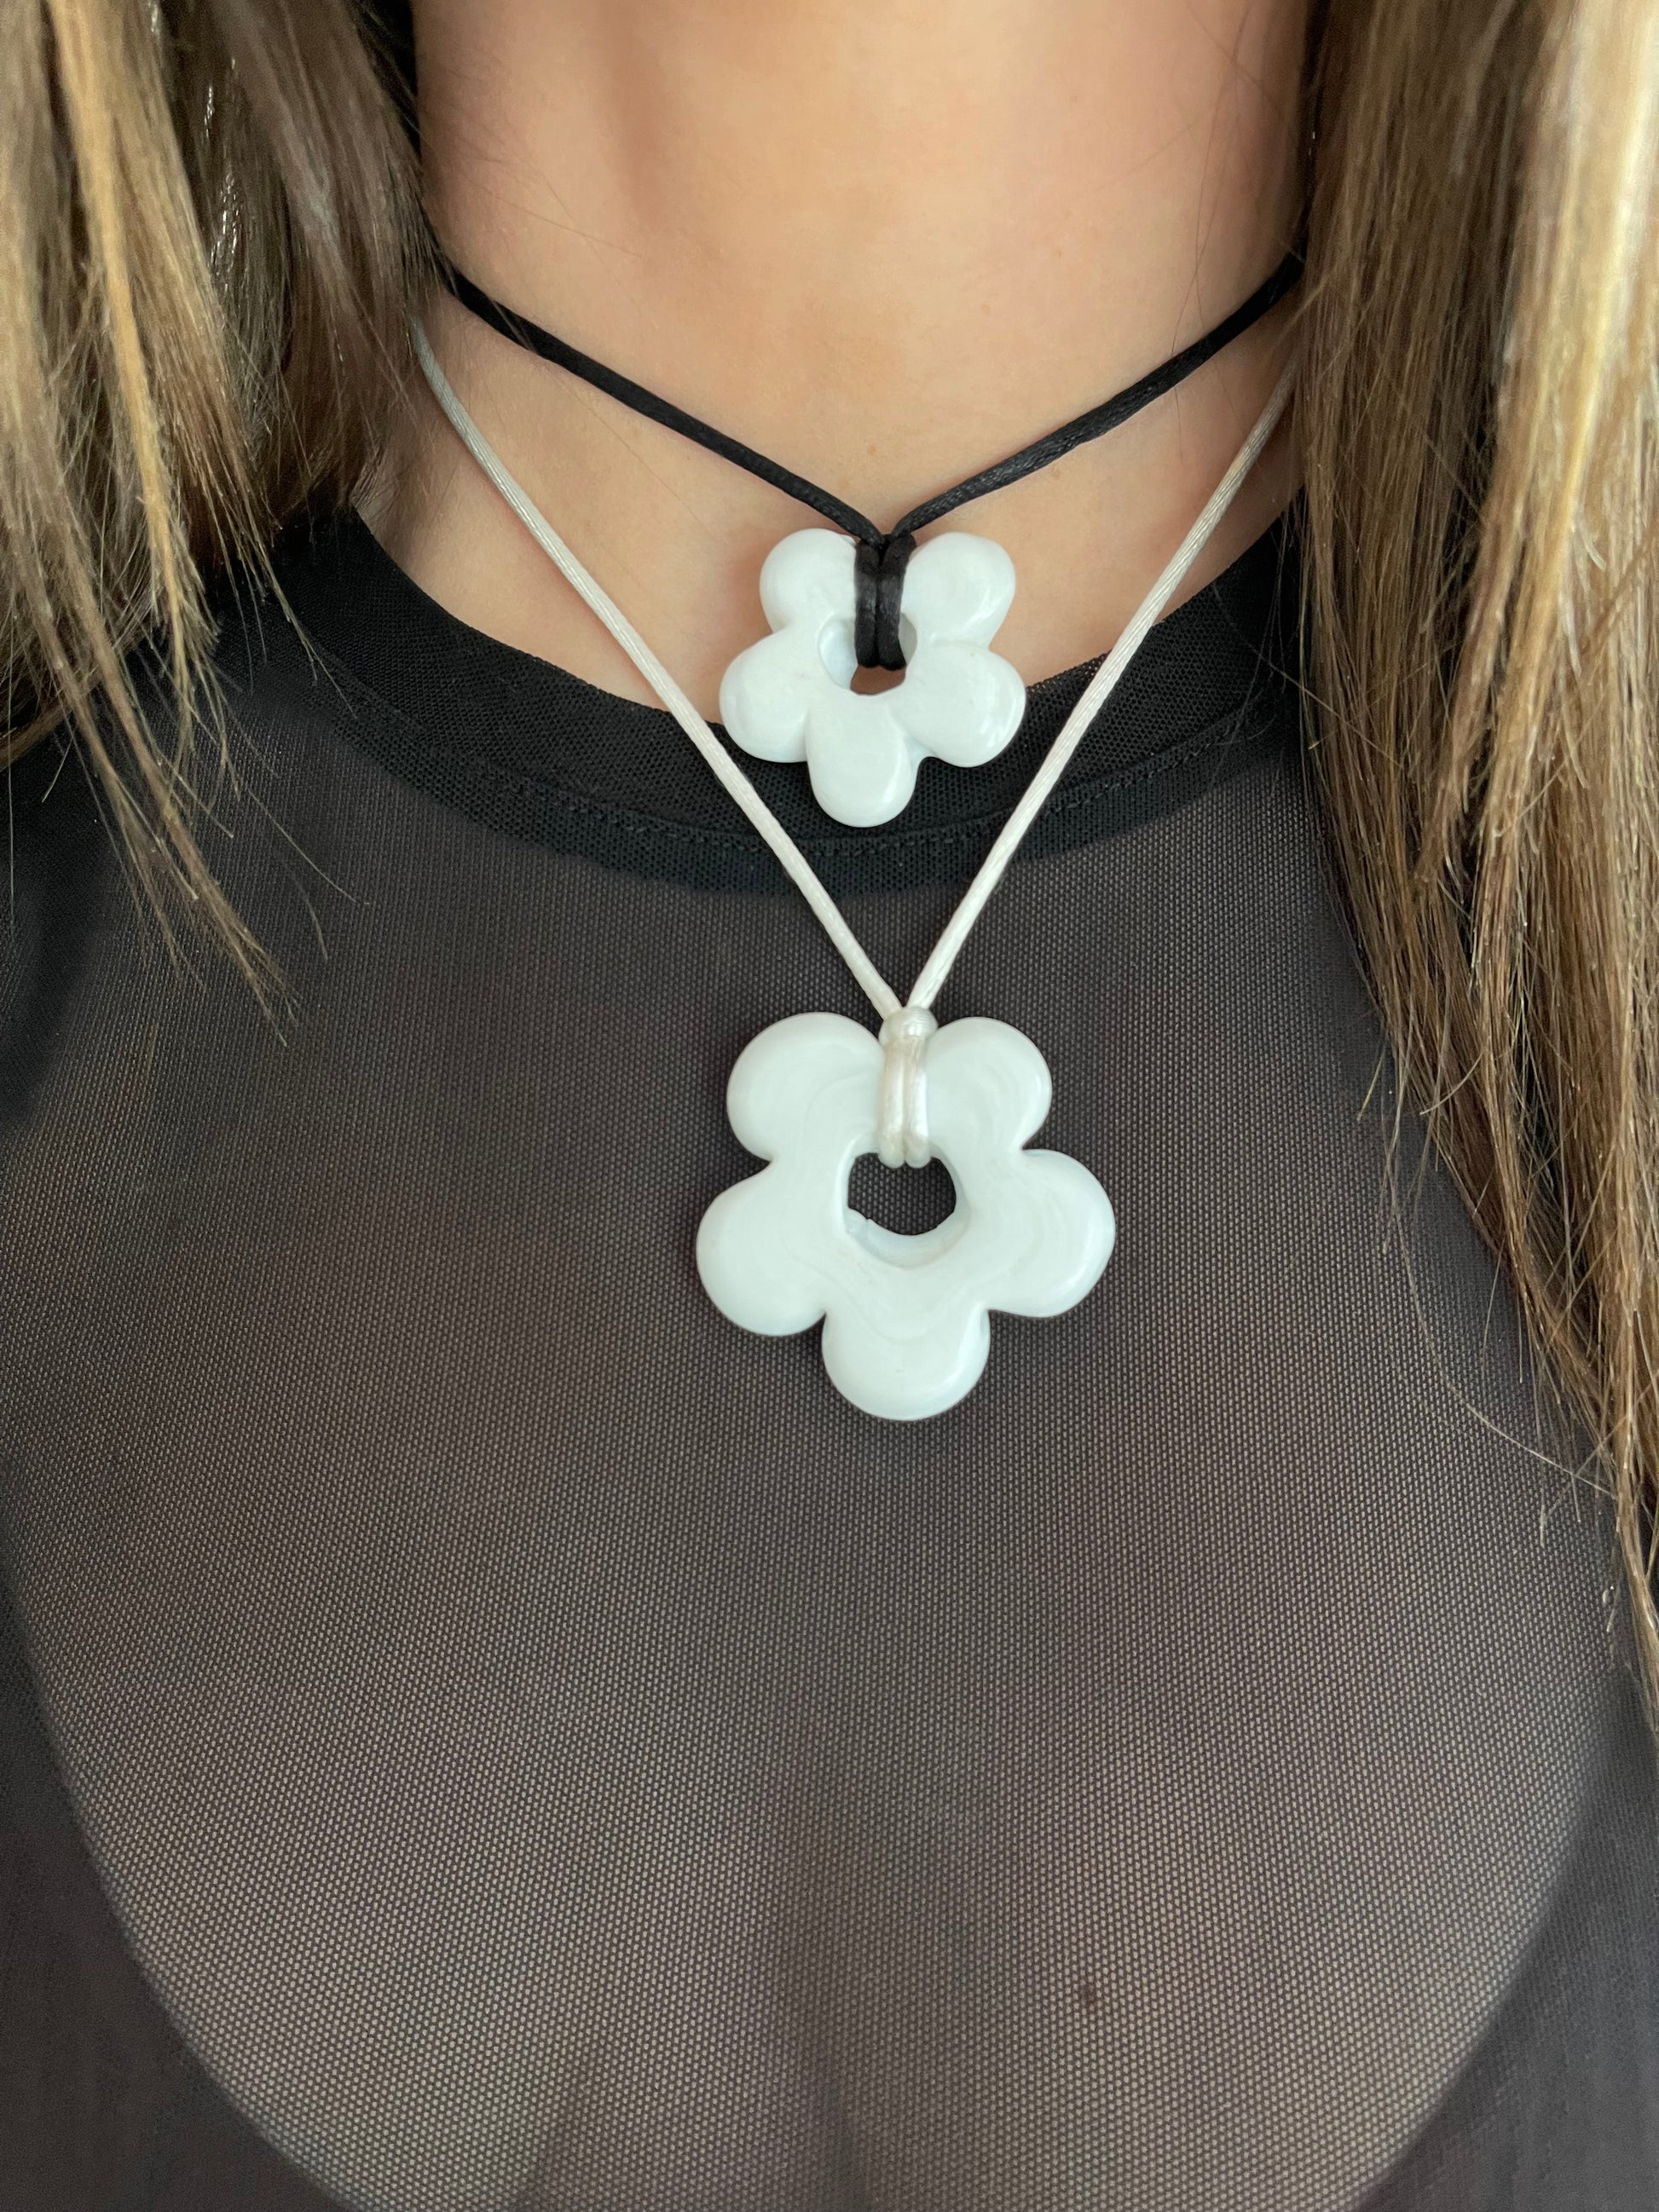 Black Four Leaf Clover Flower Necklace - Gold